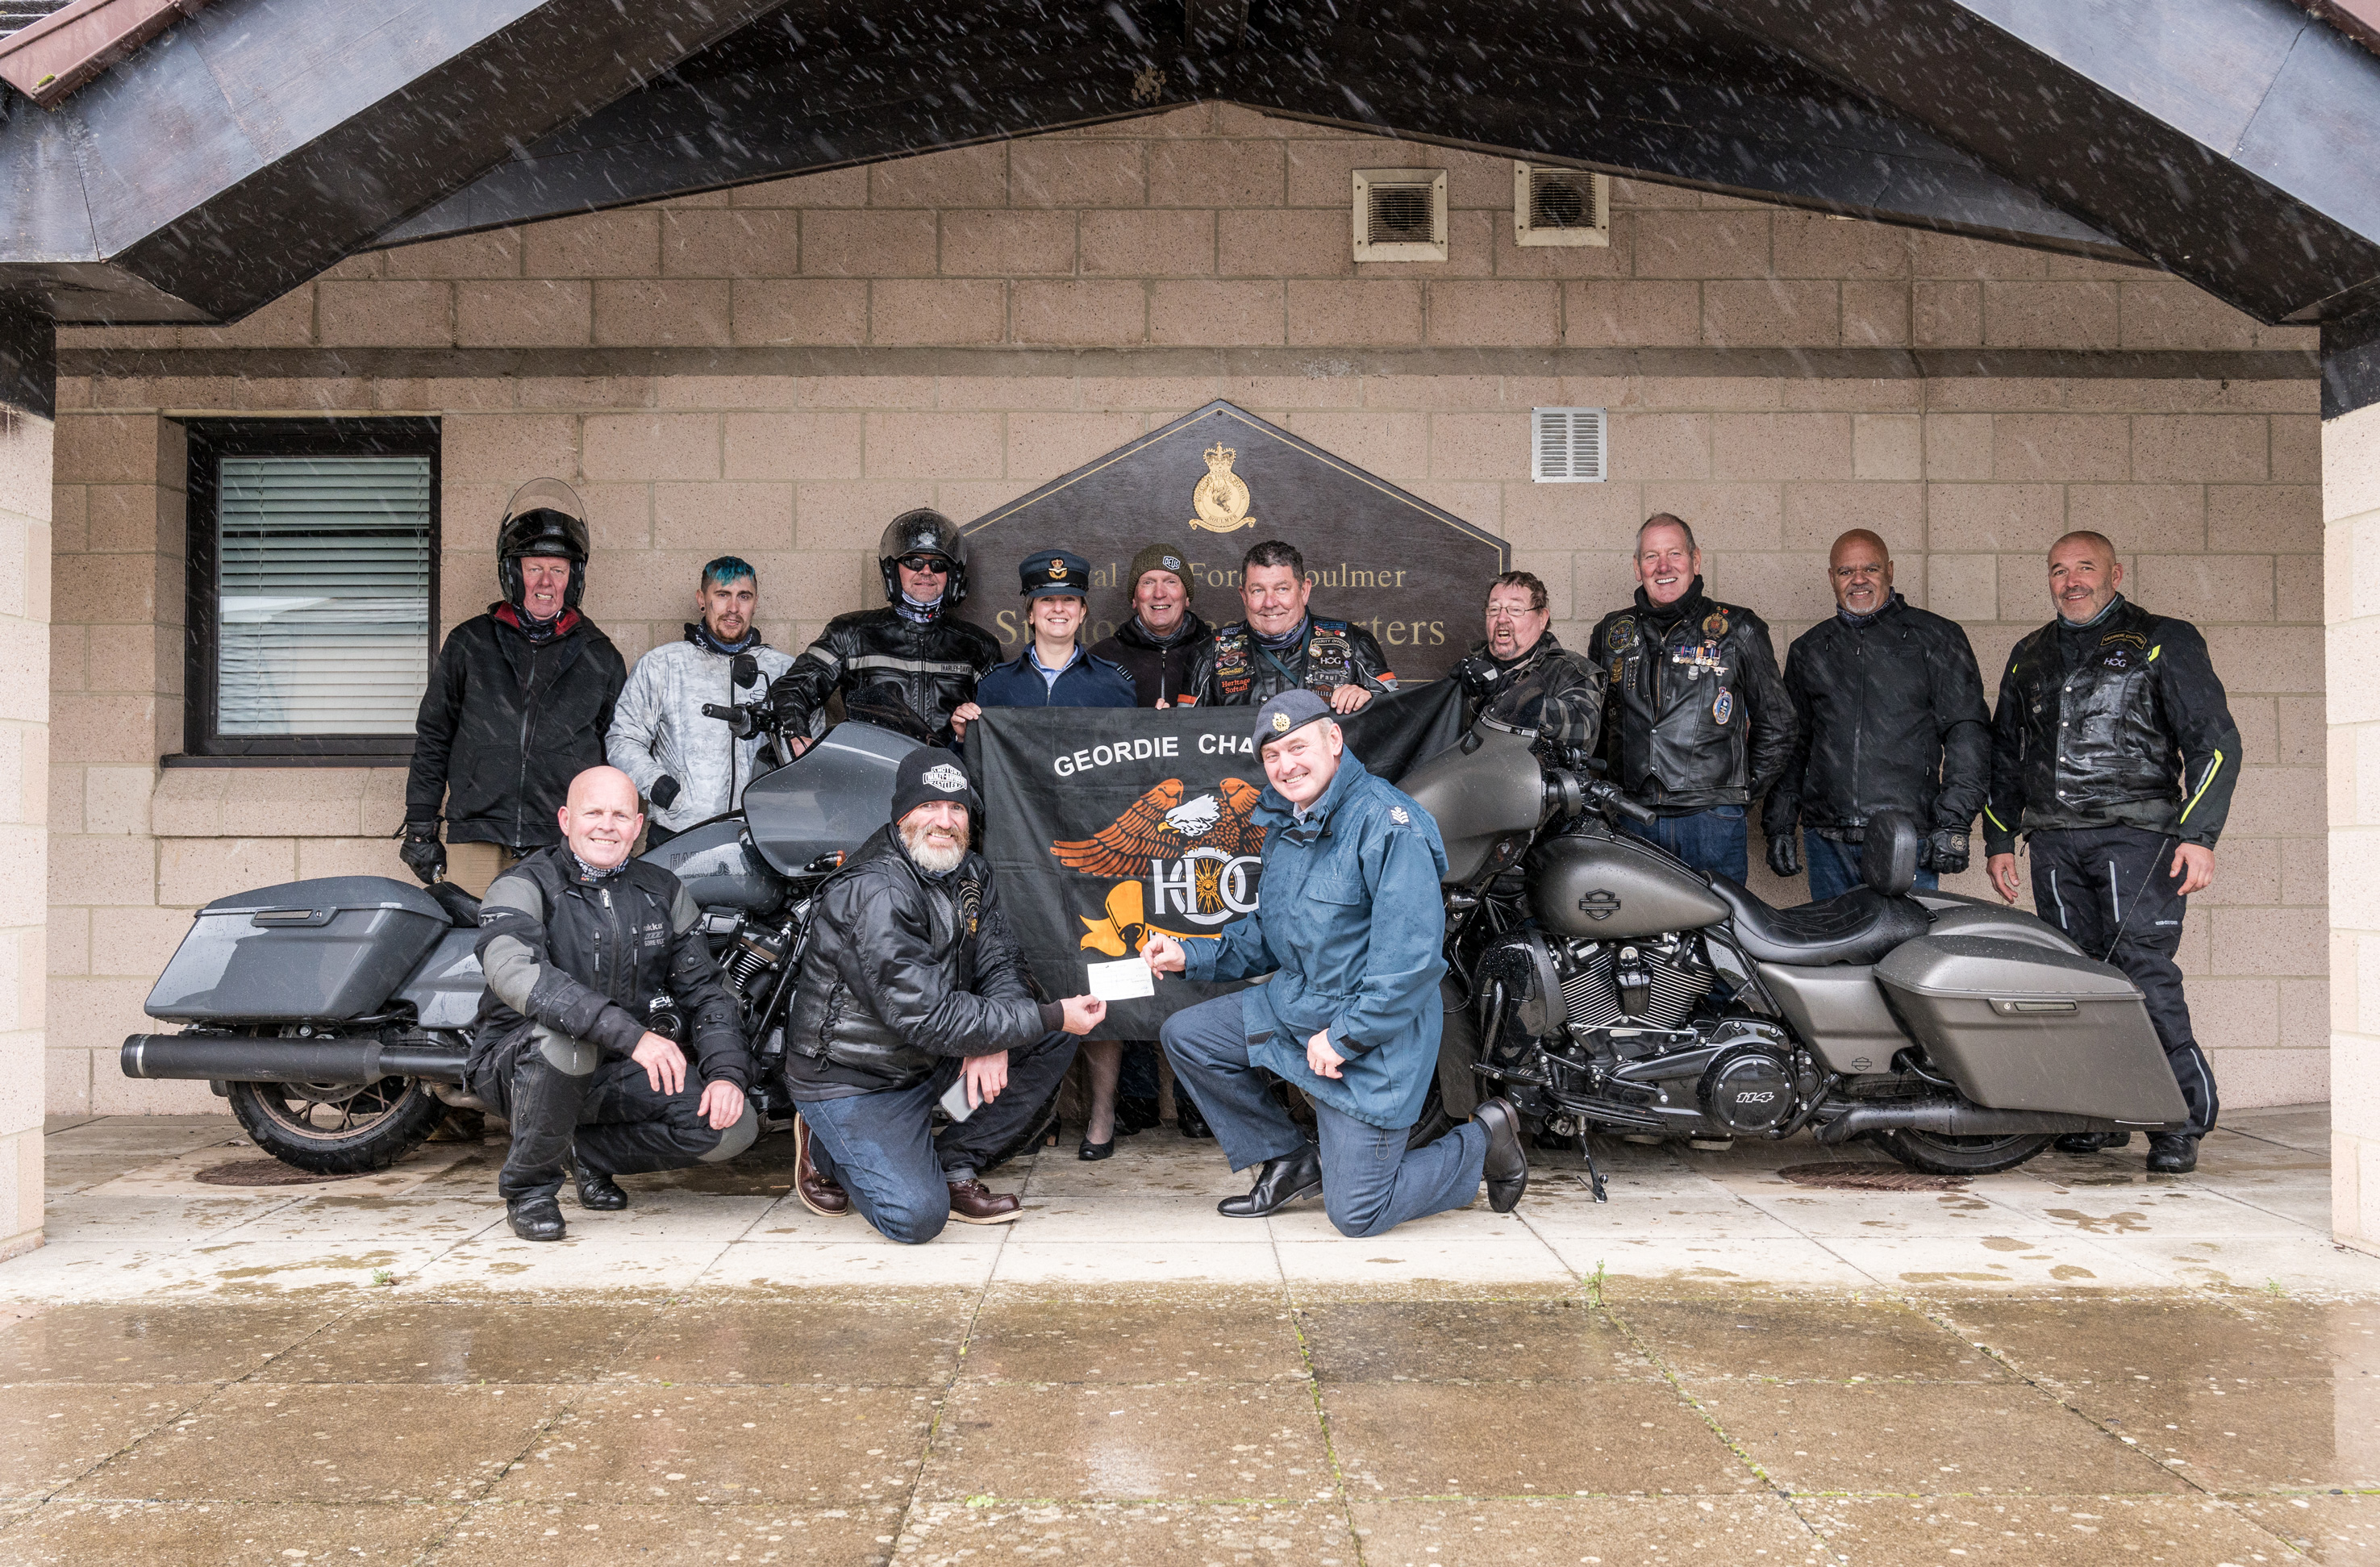 Members of the Geordie Chapter Harley Owners Group (HOG)